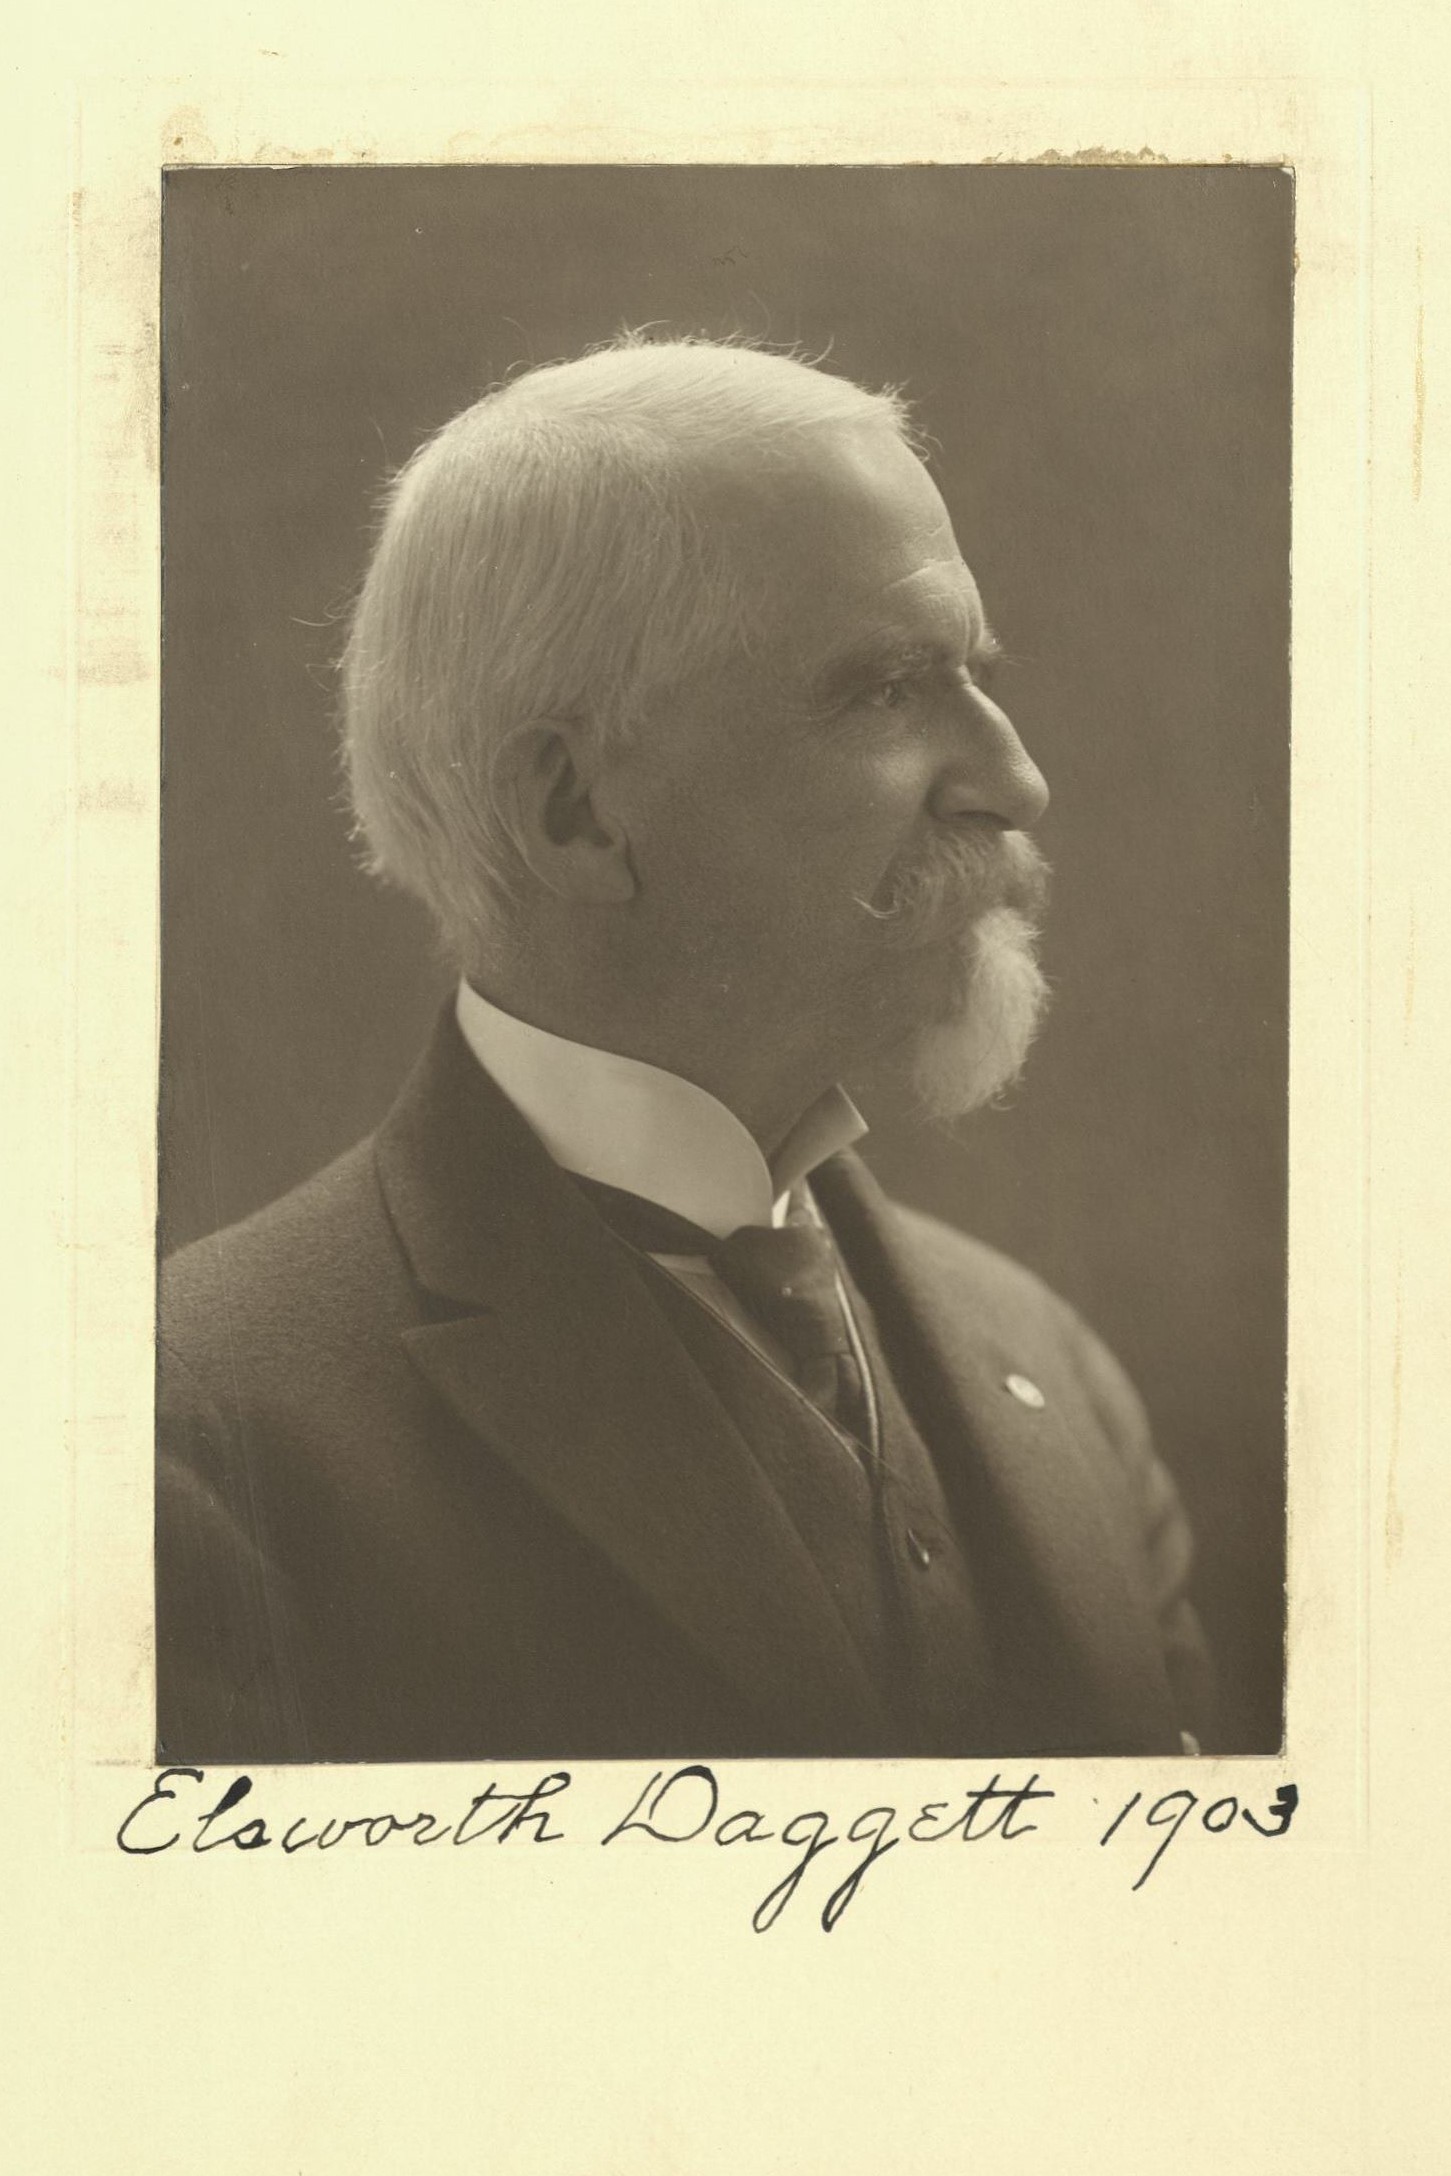 Member portrait of Ellsworth Daggett